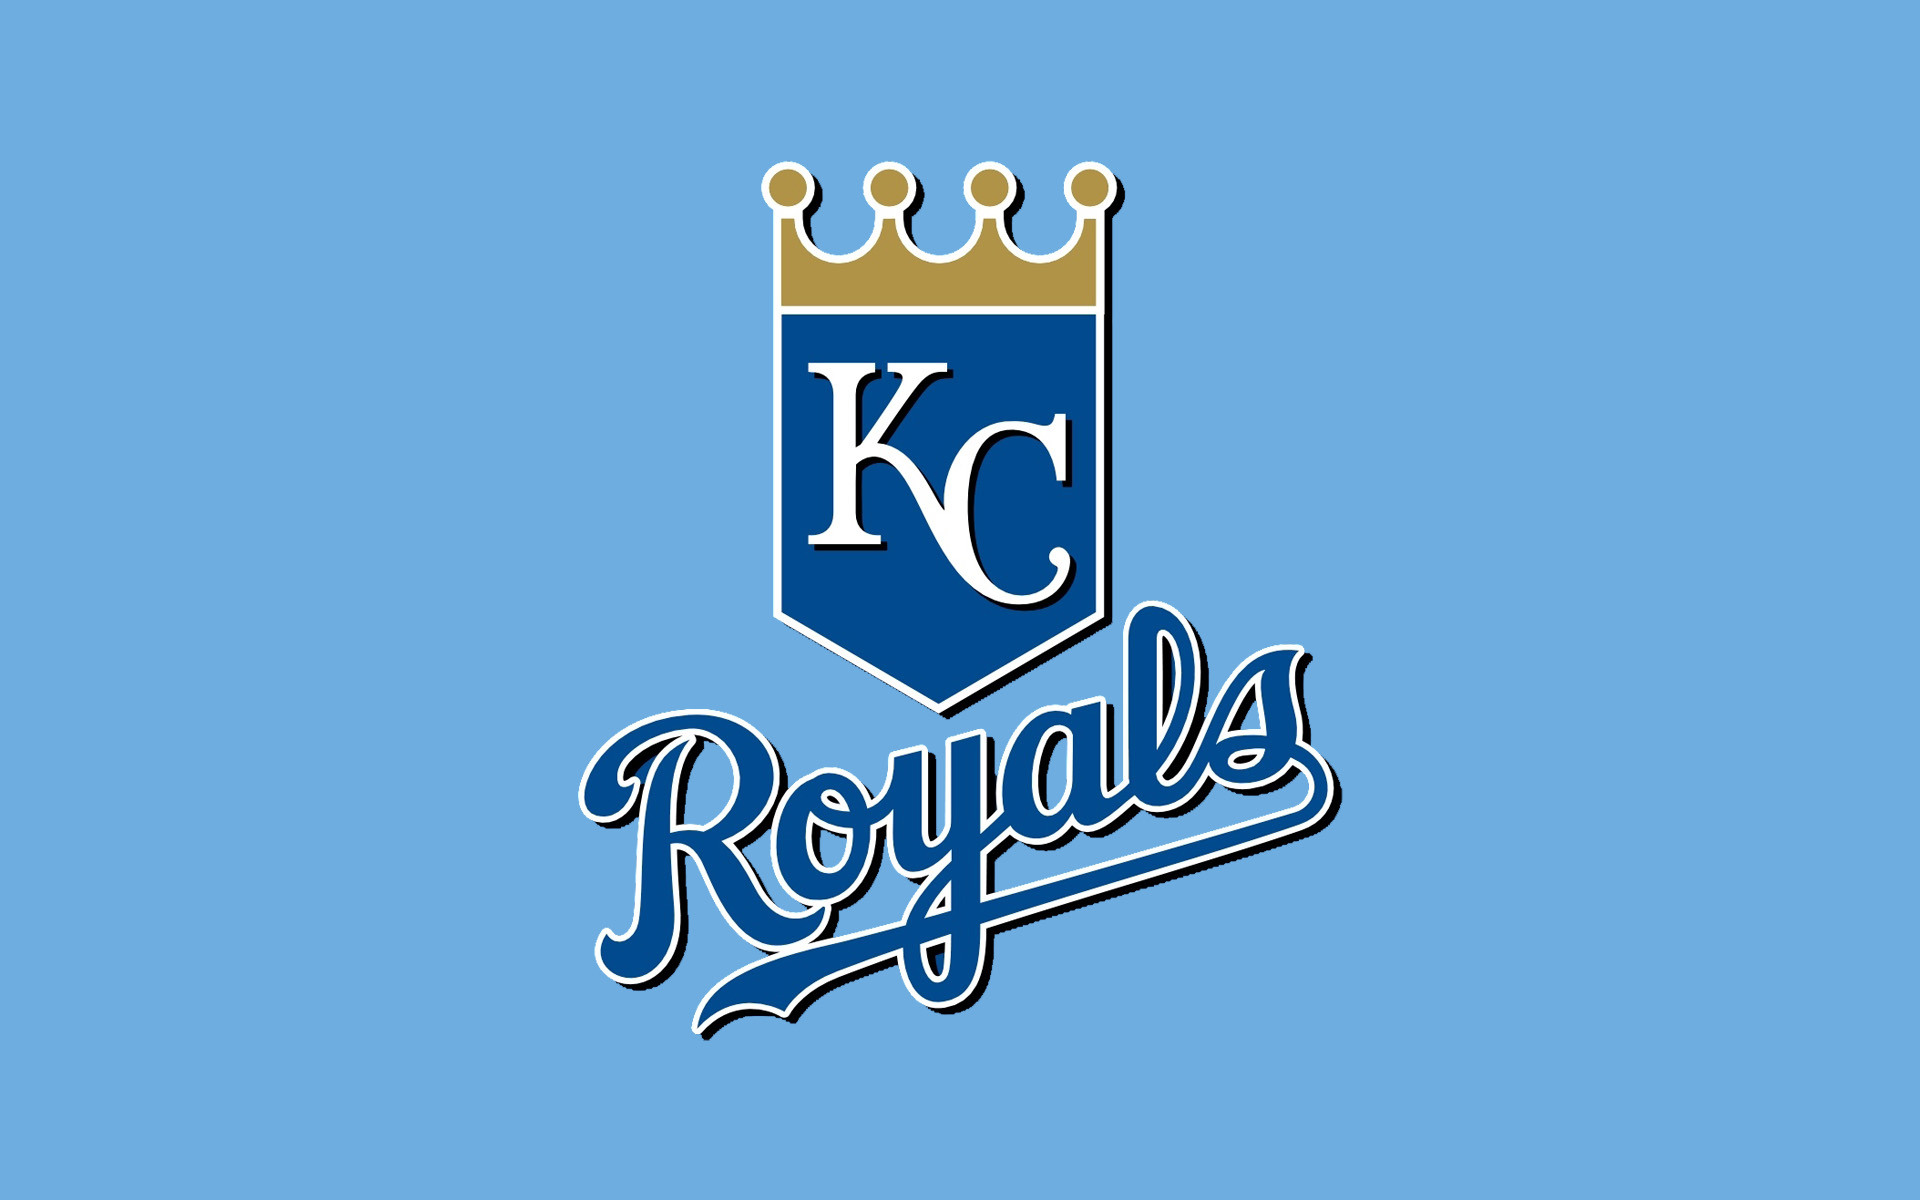 Kansas City Royals Backgrounds, Compatible - PC, Mobile, Gadgets| 1920x1200 px